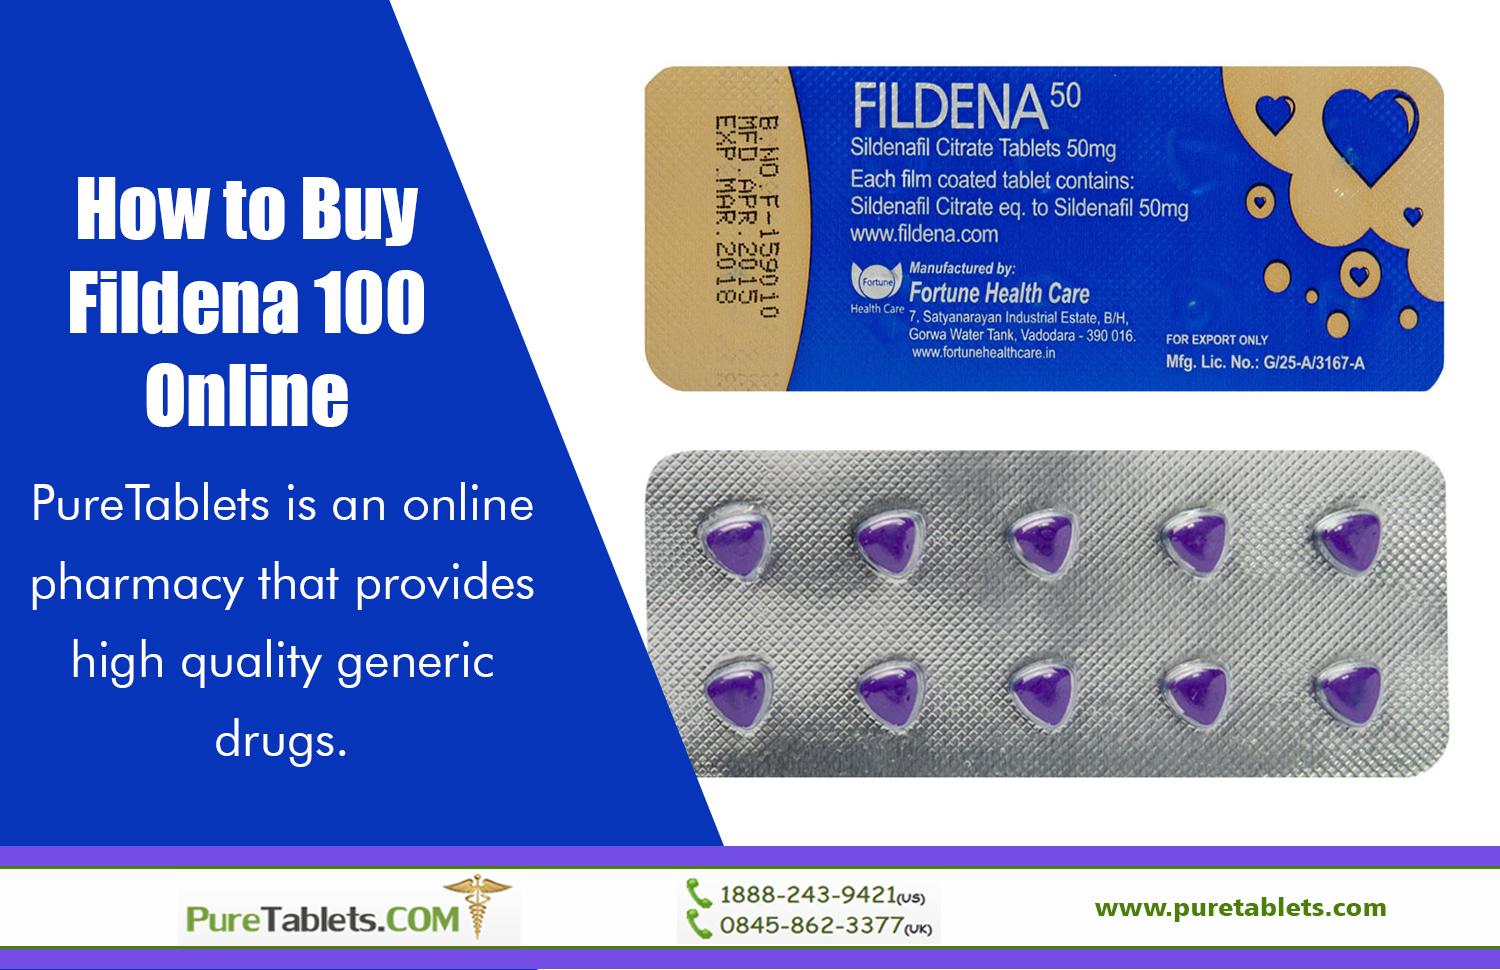 How to Buy Fildena 100 Online (2)